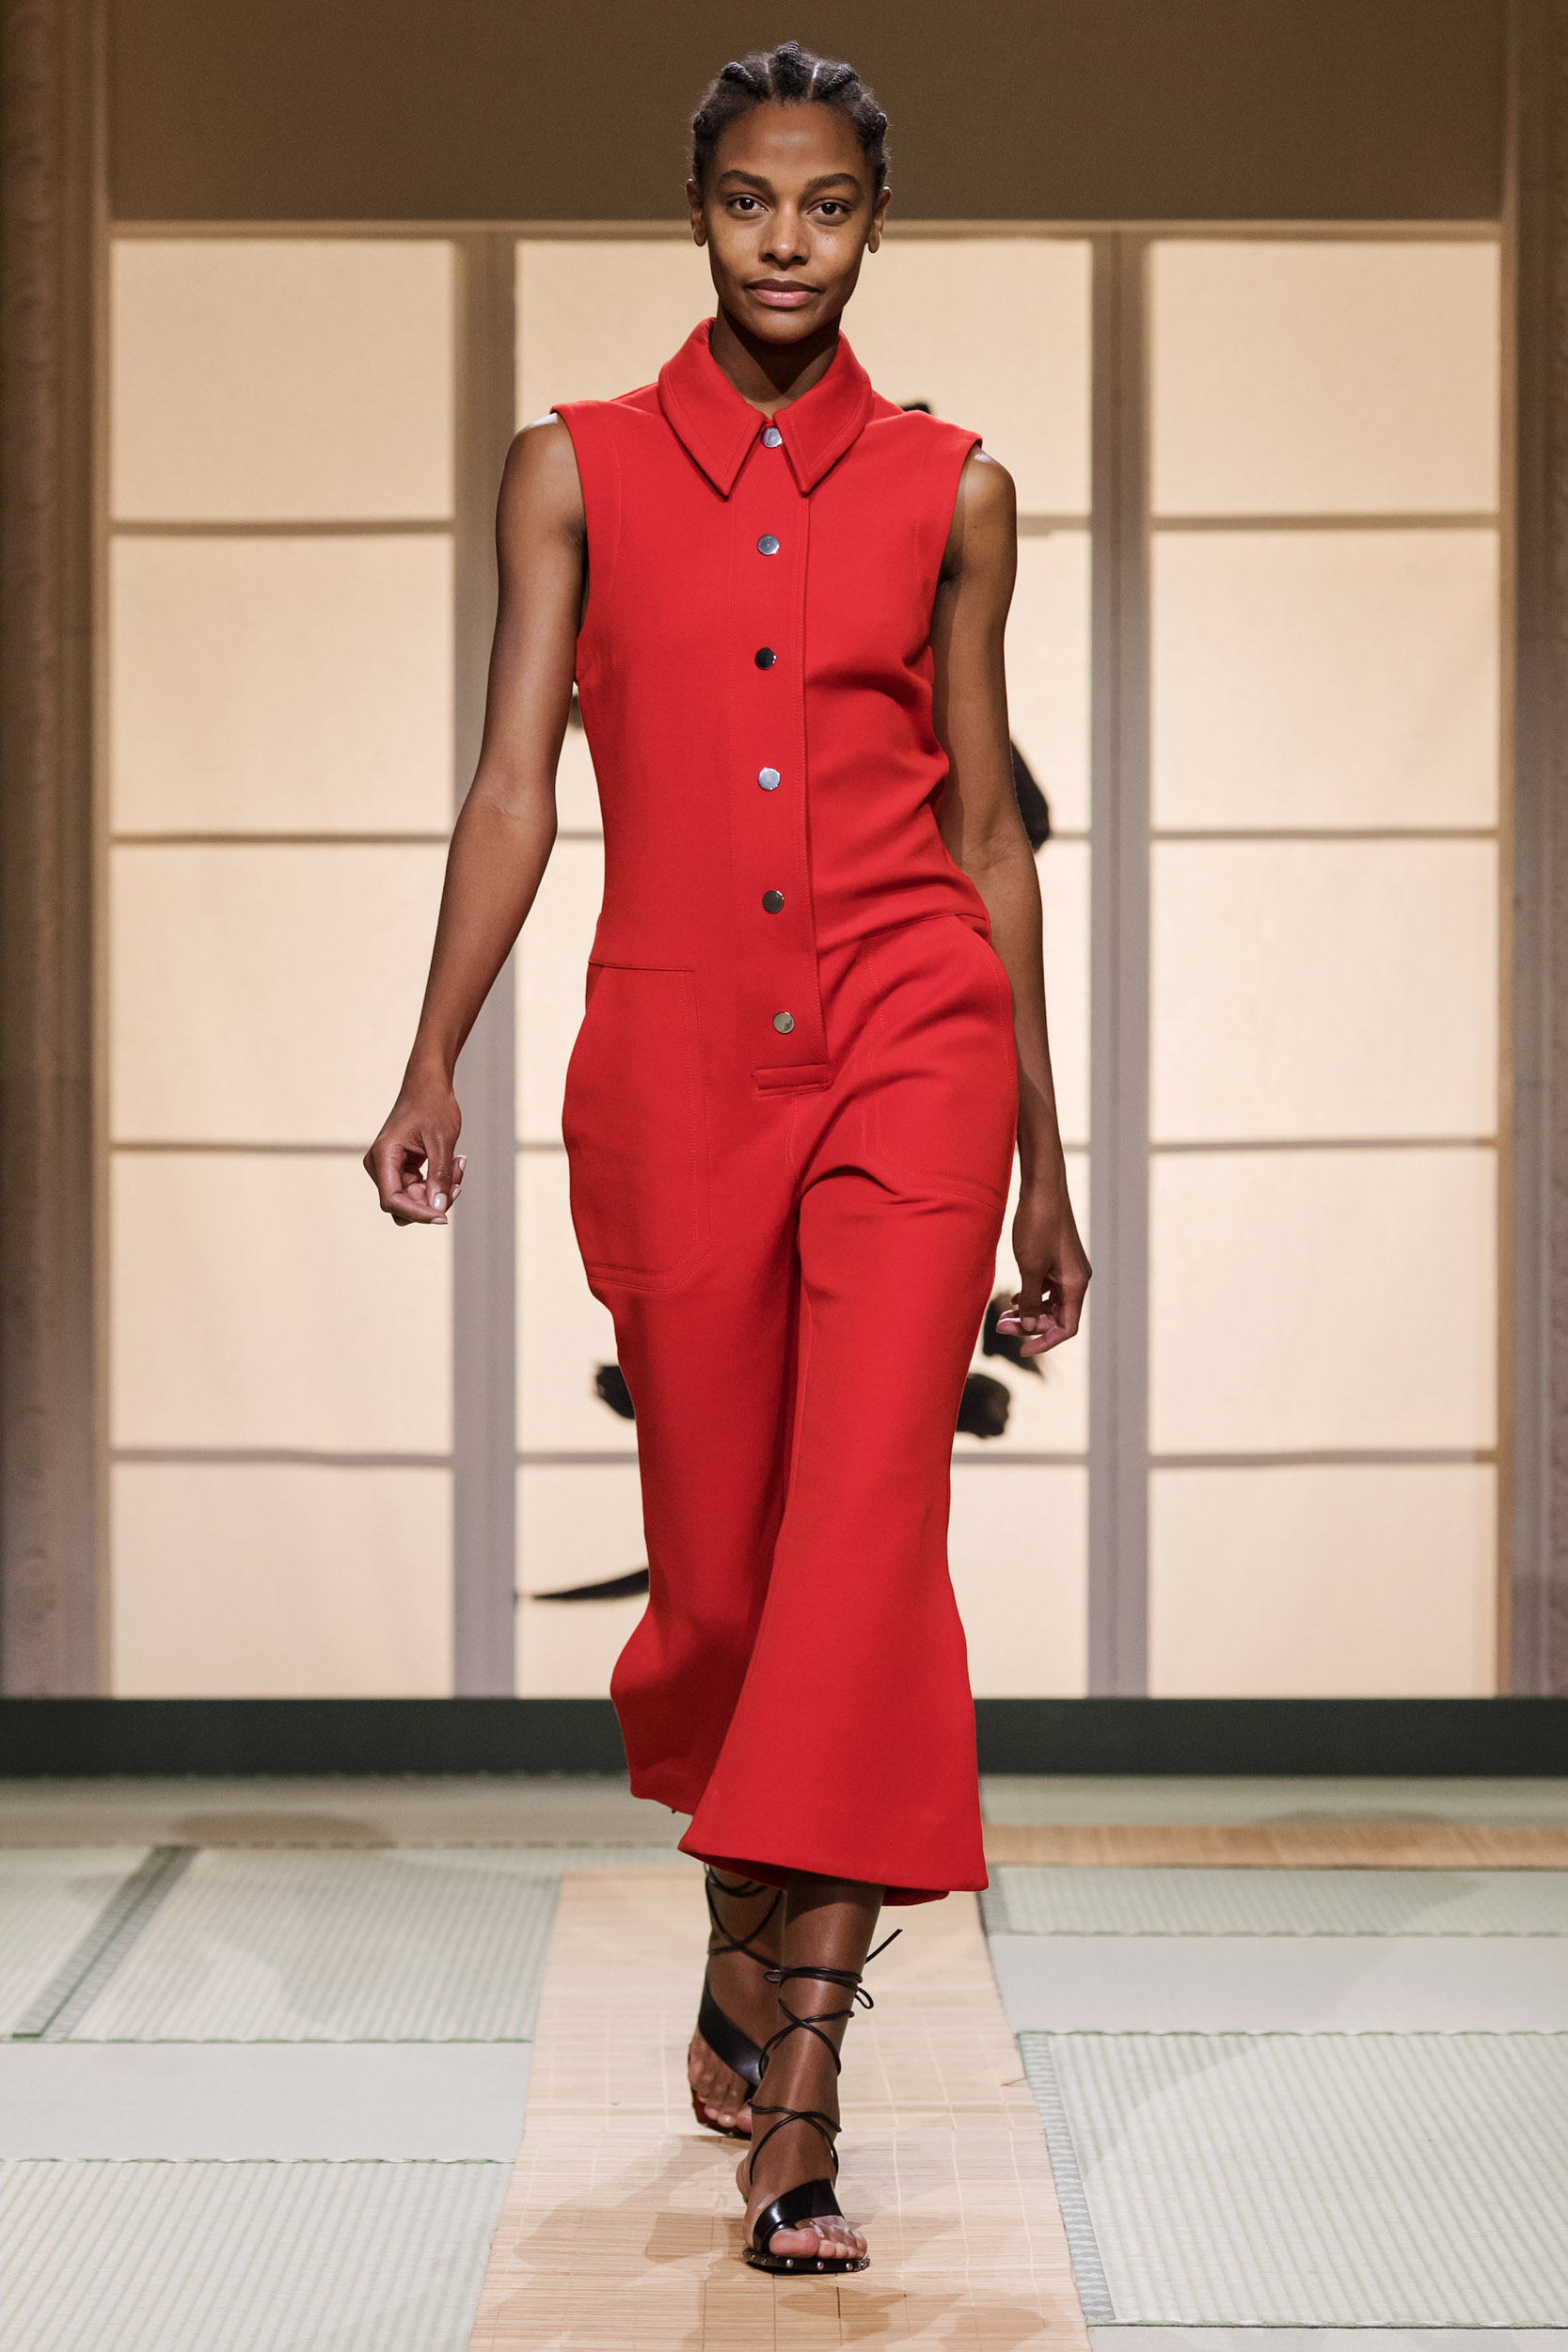 Fashionista Châu Bùi, Kelbin Lei diện nguyên set trang phục H&M đến tham dự Paris Fashion Week